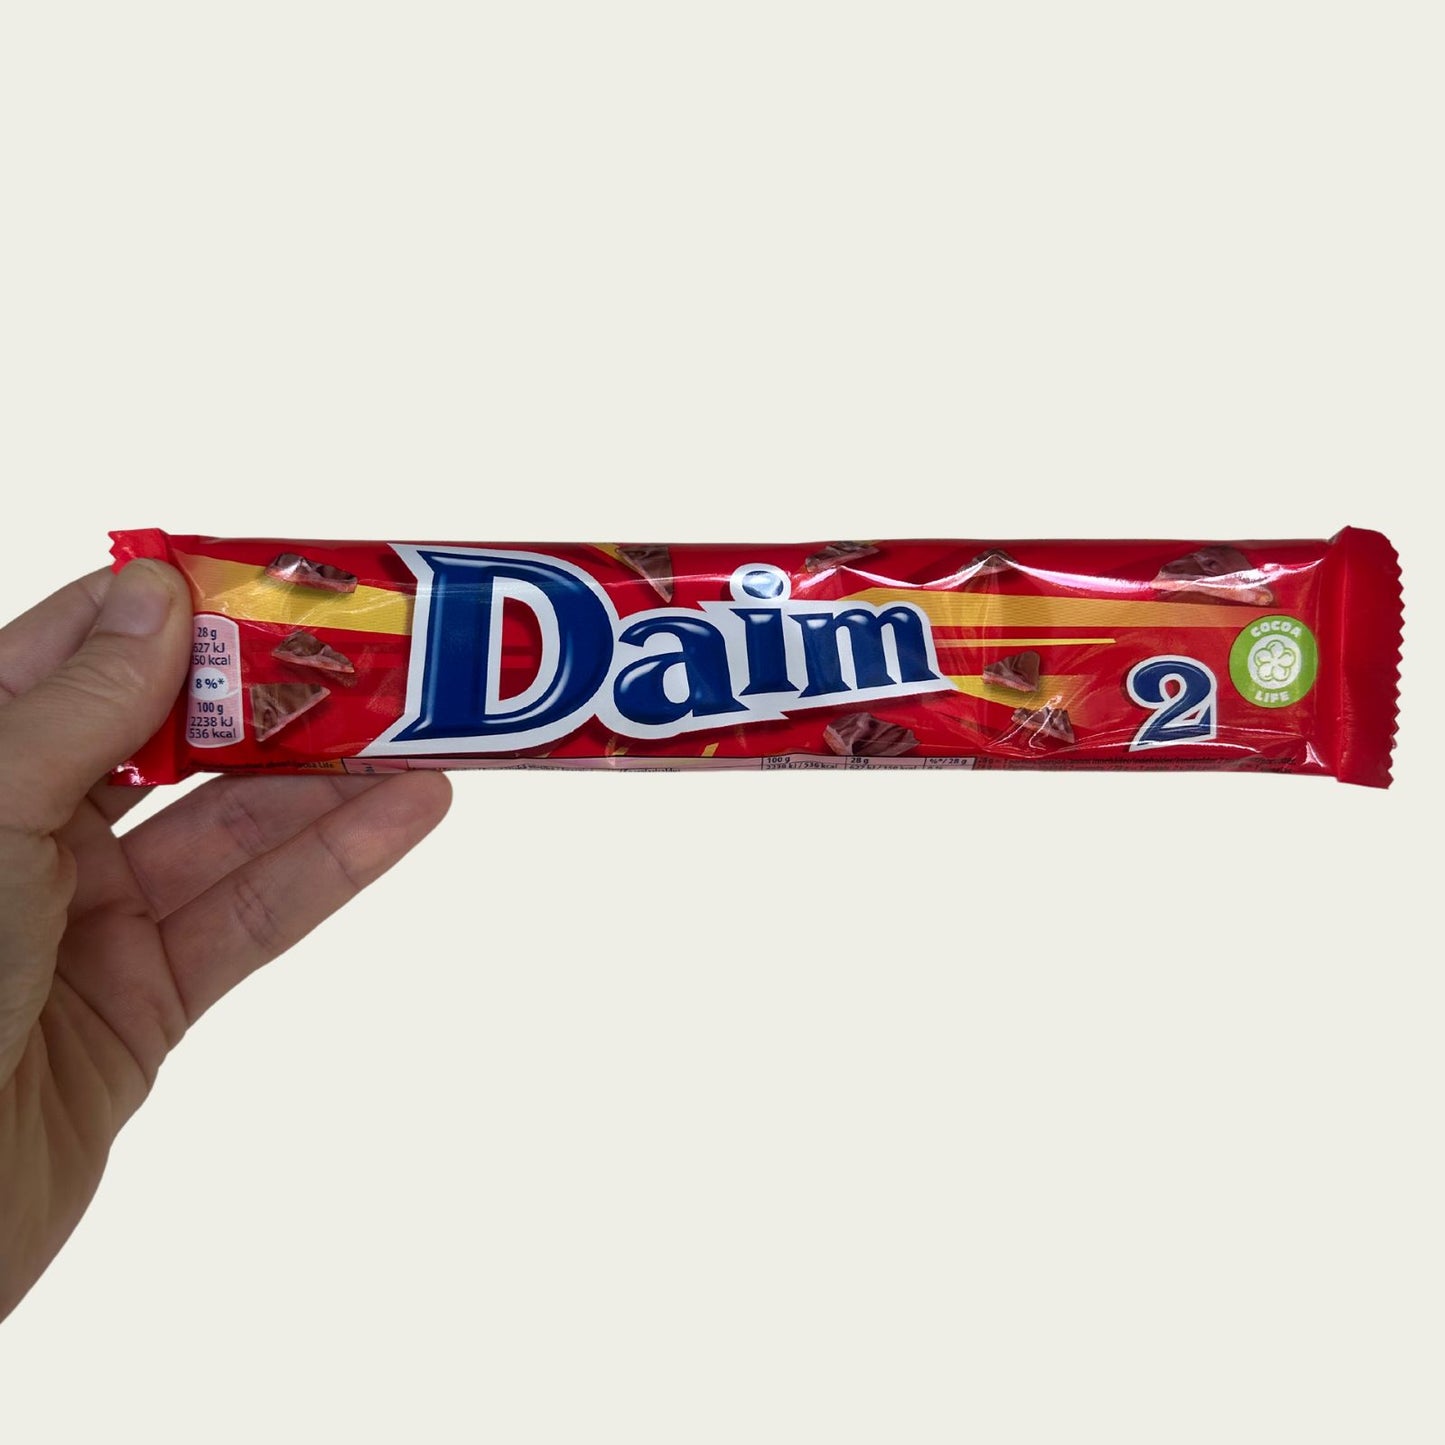 Daim (2-pack)